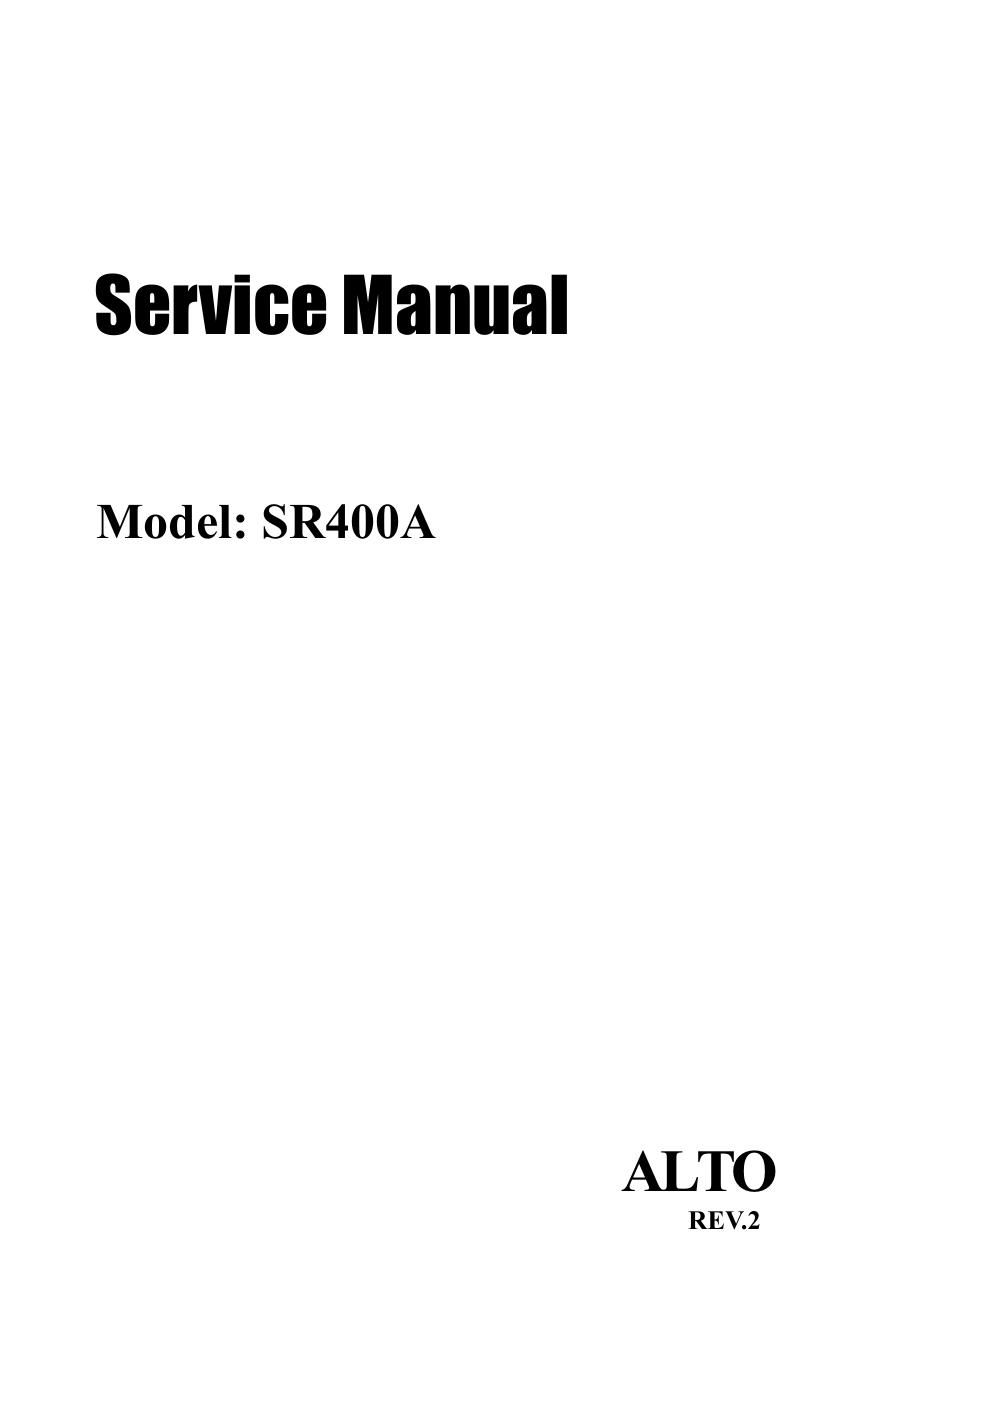 alto sr 400a service manual